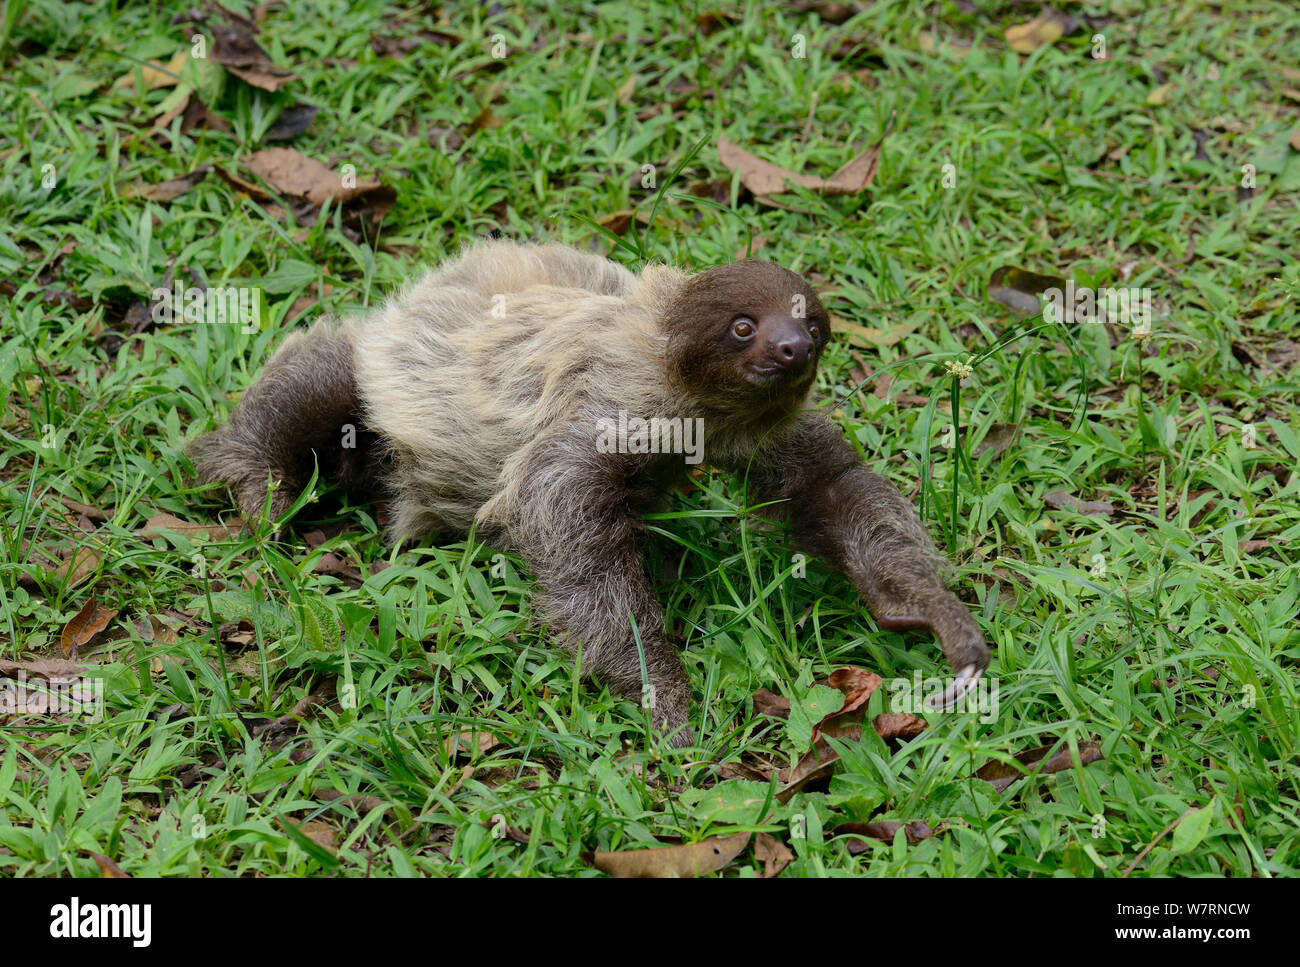 Unau / deux-toed sloth (Choloepus didactylus) sur le sol, la Guyane française Banque D'Images